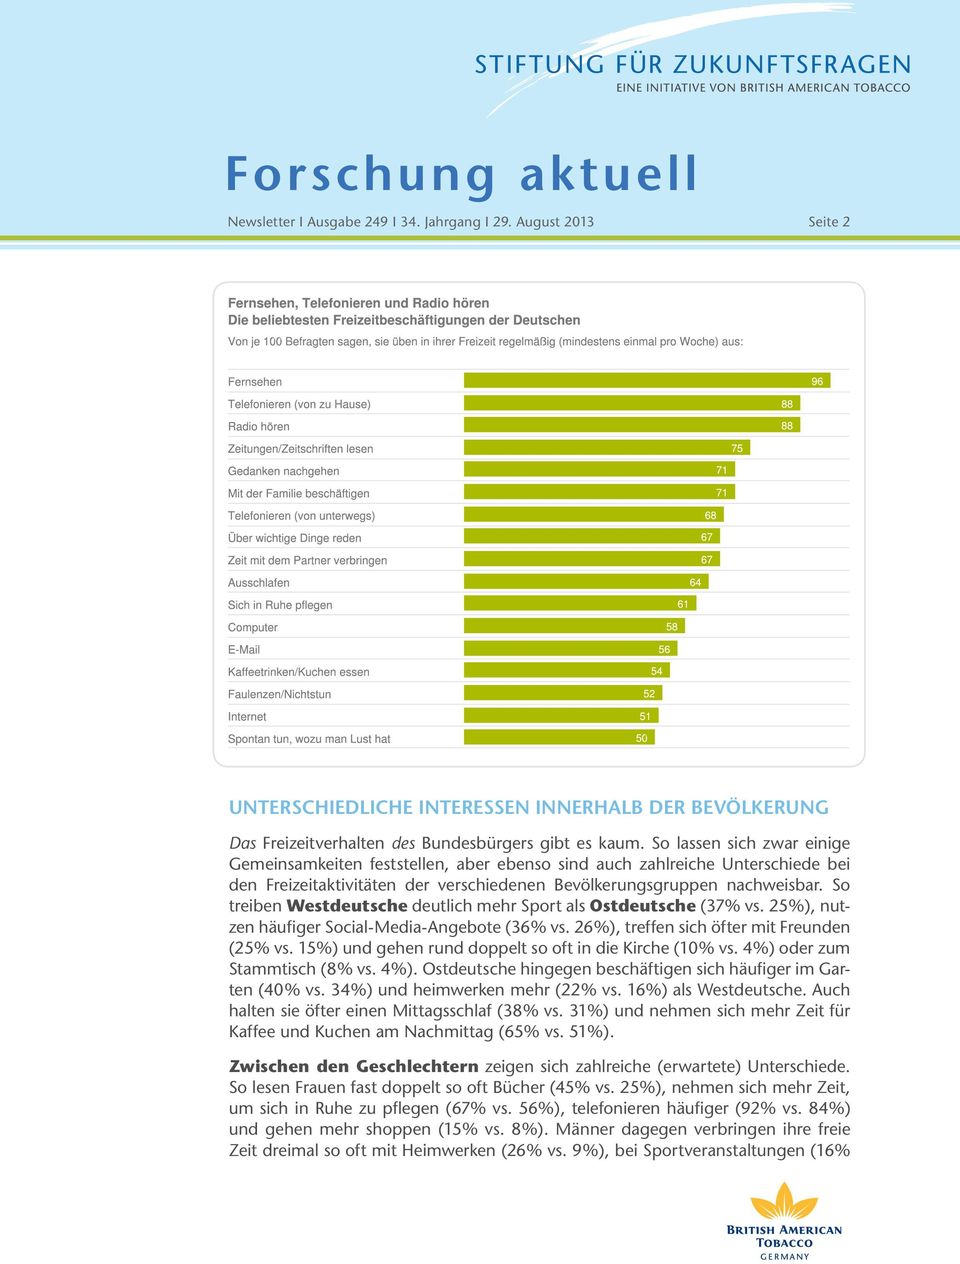 So treiben Westdeutsche deutlich mehr Sport als Ostdeutsche (37% vs. 25%), nutzen häufiger Social-Media-Angebote (36% vs. 26%), treffen sich öfter mit Freunden (25% vs.